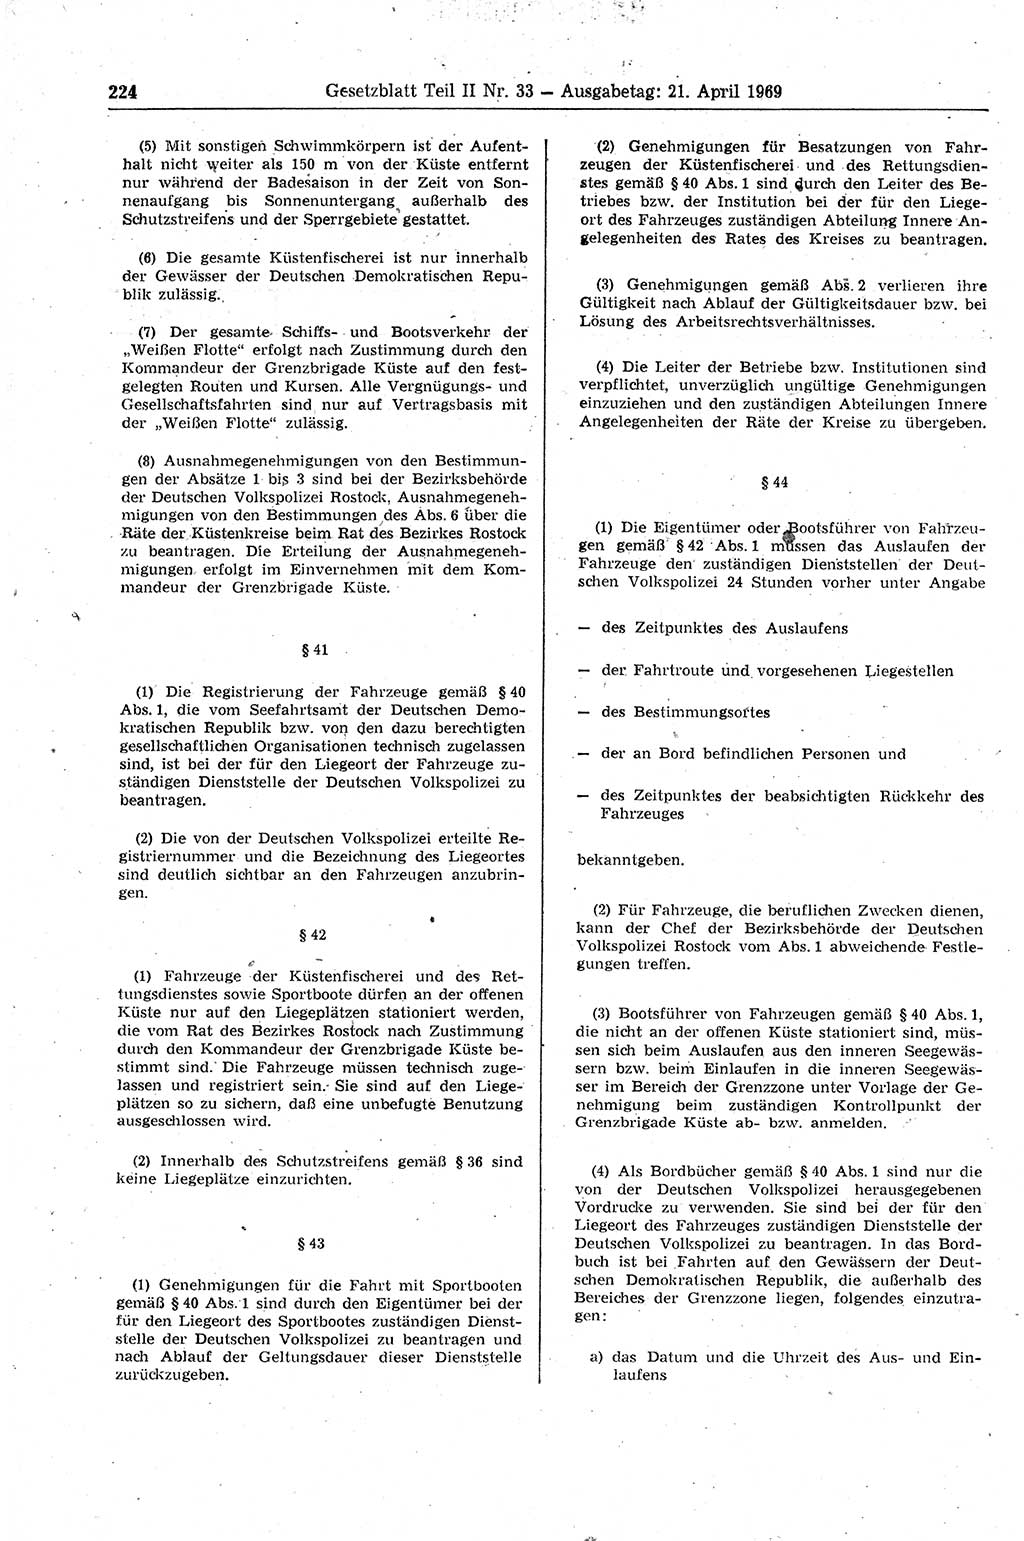 Gesetzblatt (GBl.) der Deutschen Demokratischen Republik (DDR) Teil ⅠⅠ 1969, Seite 224 (GBl. DDR ⅠⅠ 1969, S. 224)